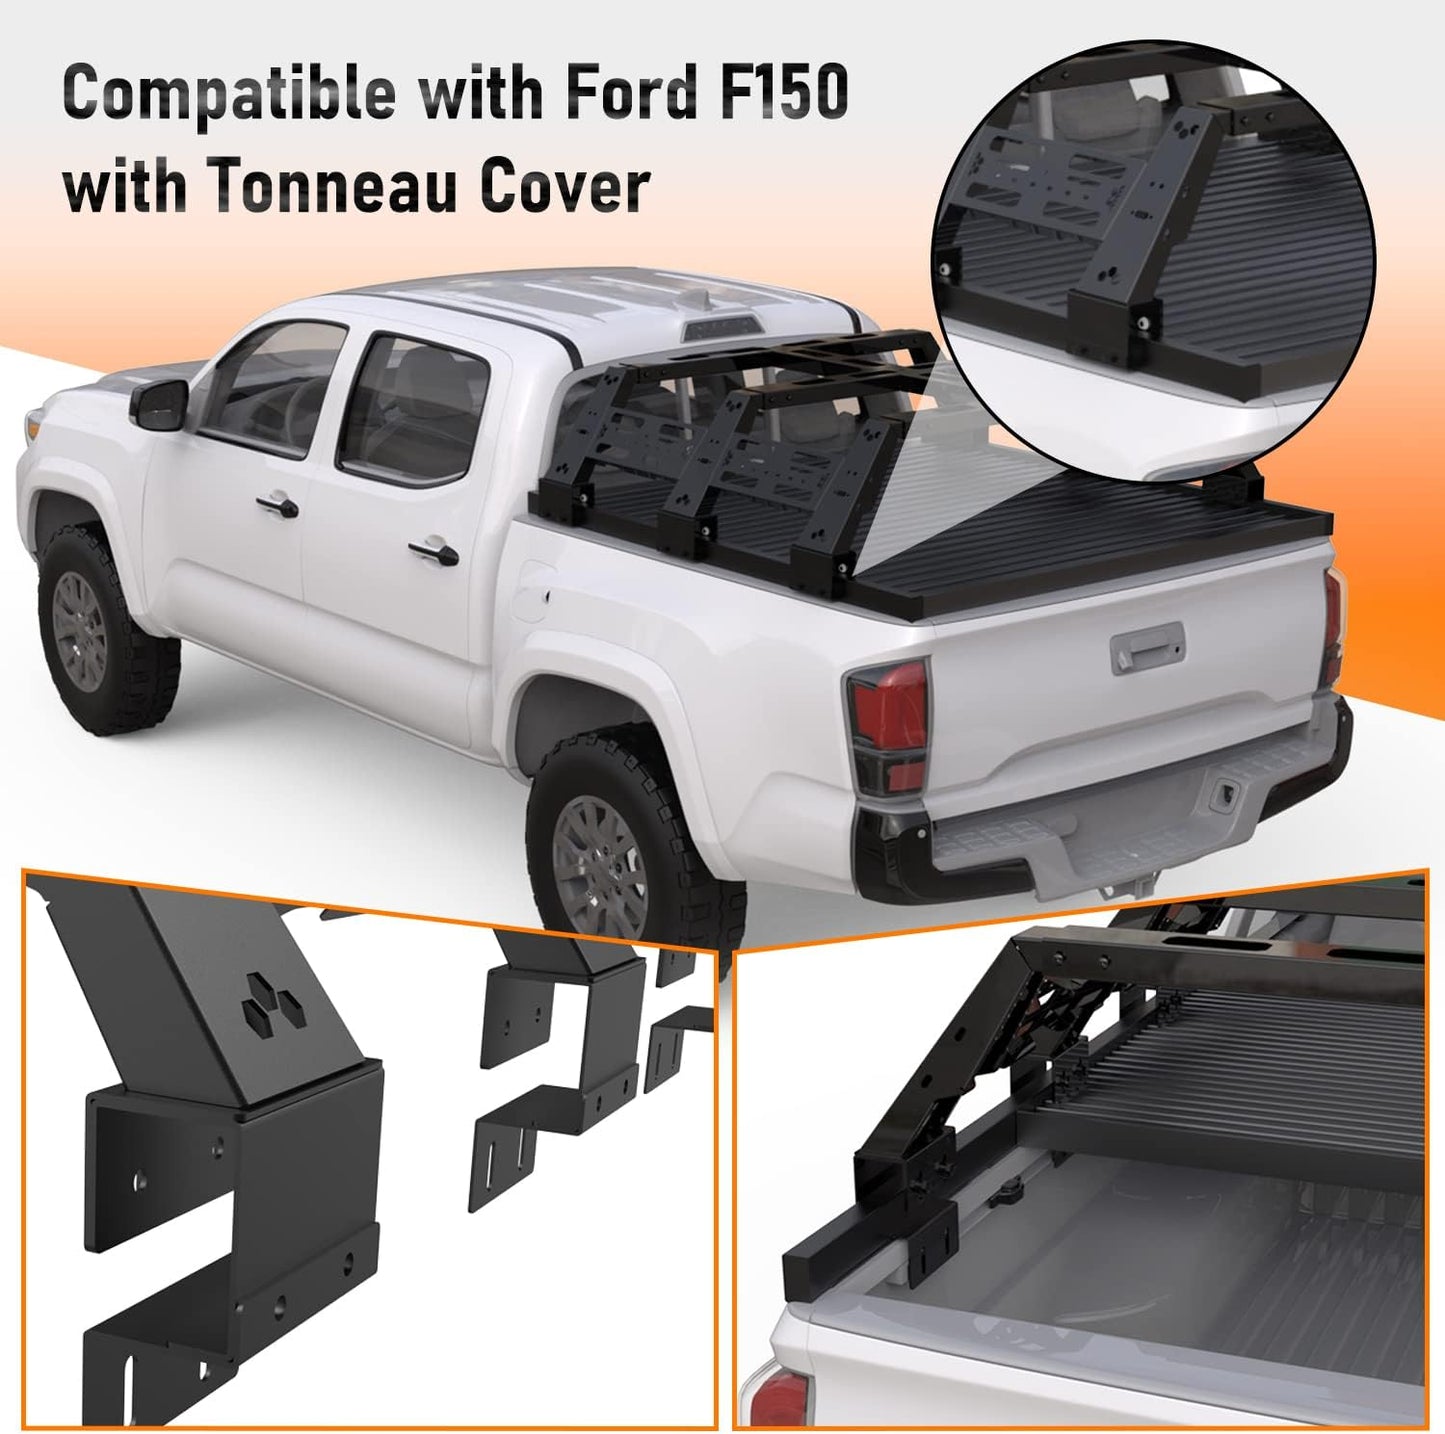 Ford F150 Overland Bed Rack - MELIPRON